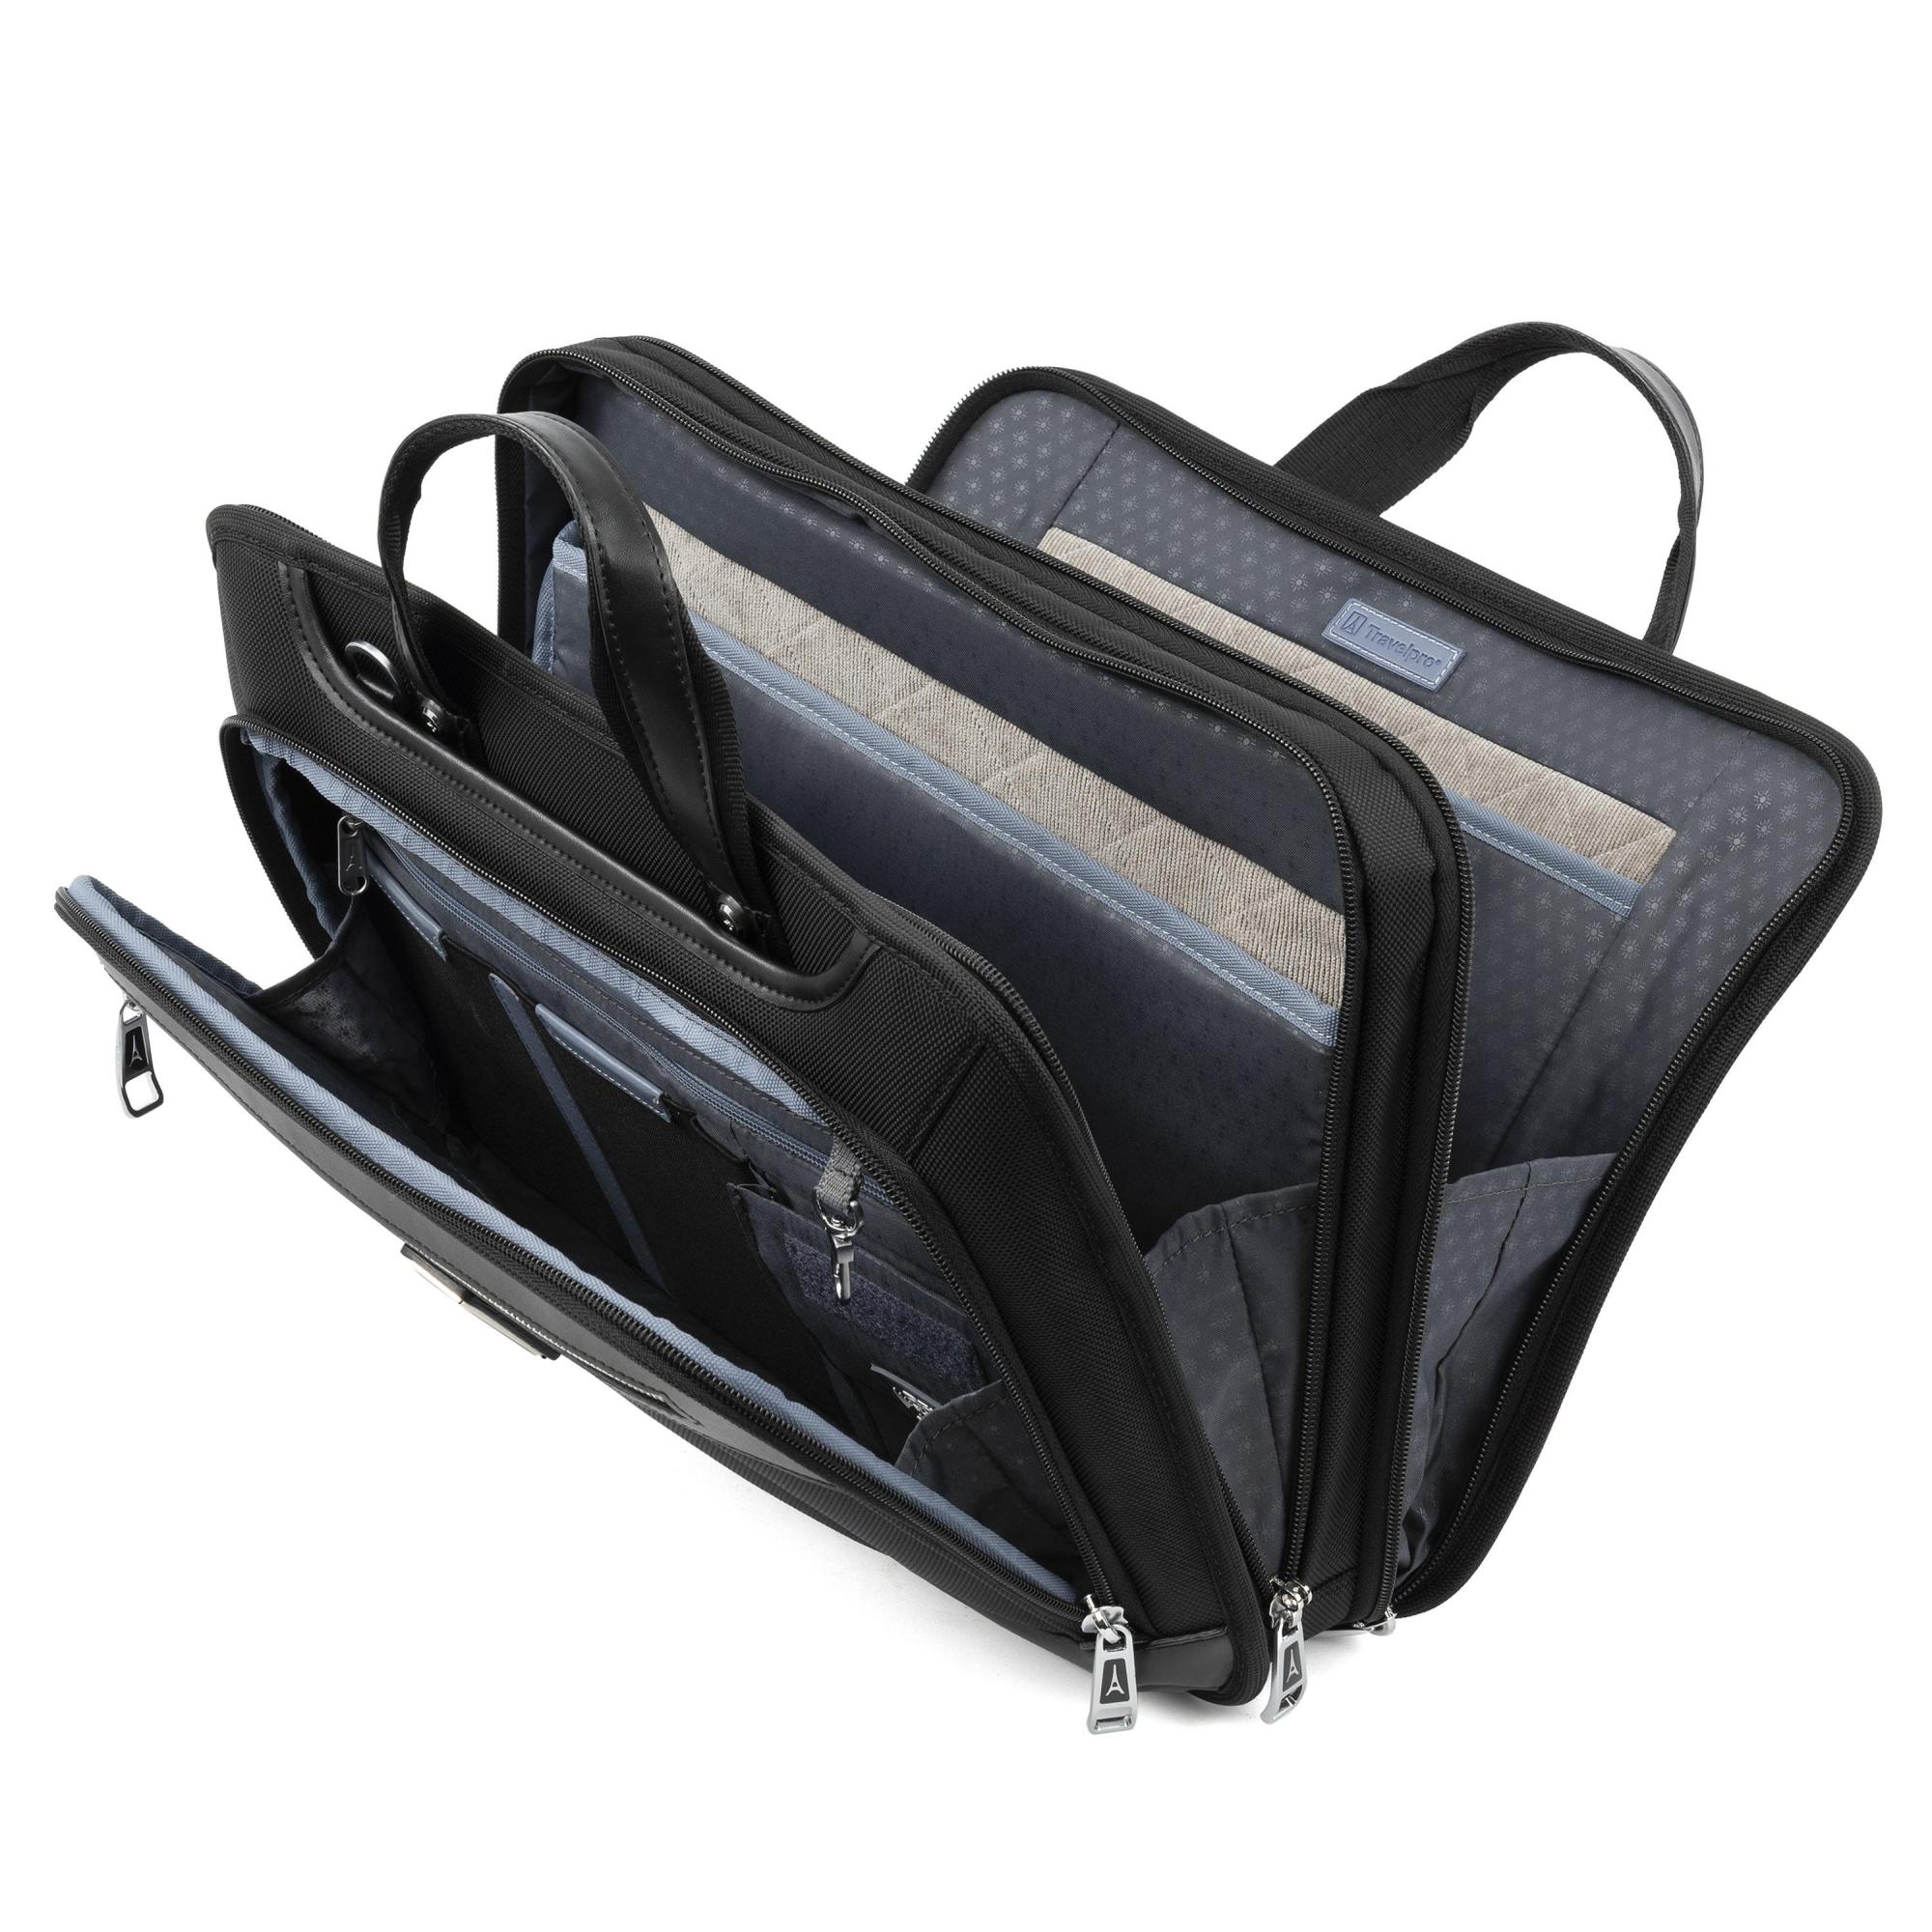 Travelpro Platinum Elite Slim Business Brief – Luggage Pros